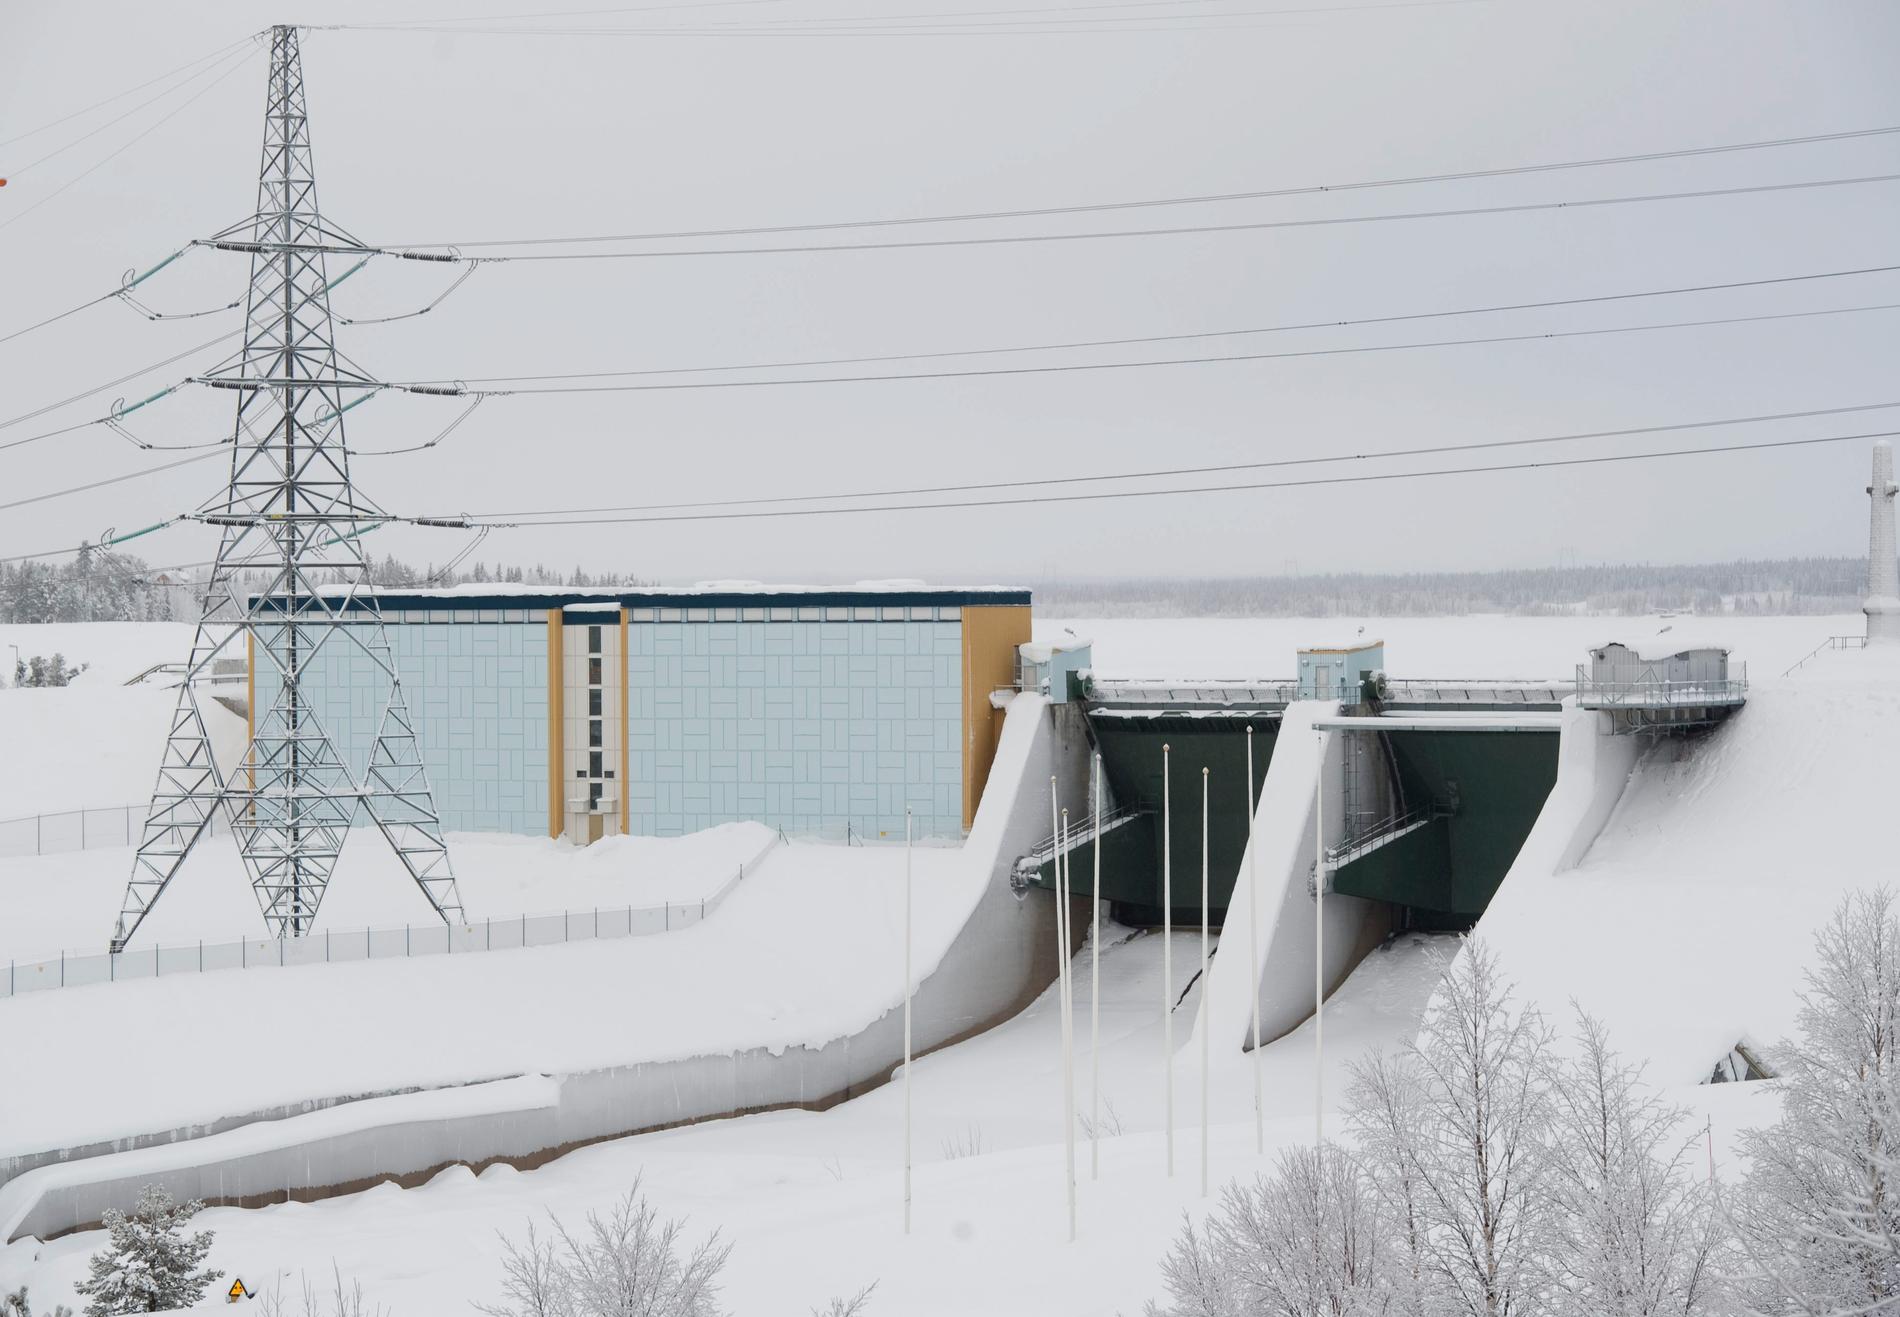 Flera vattenkraftverk jobbar för tillfället med isläggning, vilket påverkar elpriset.